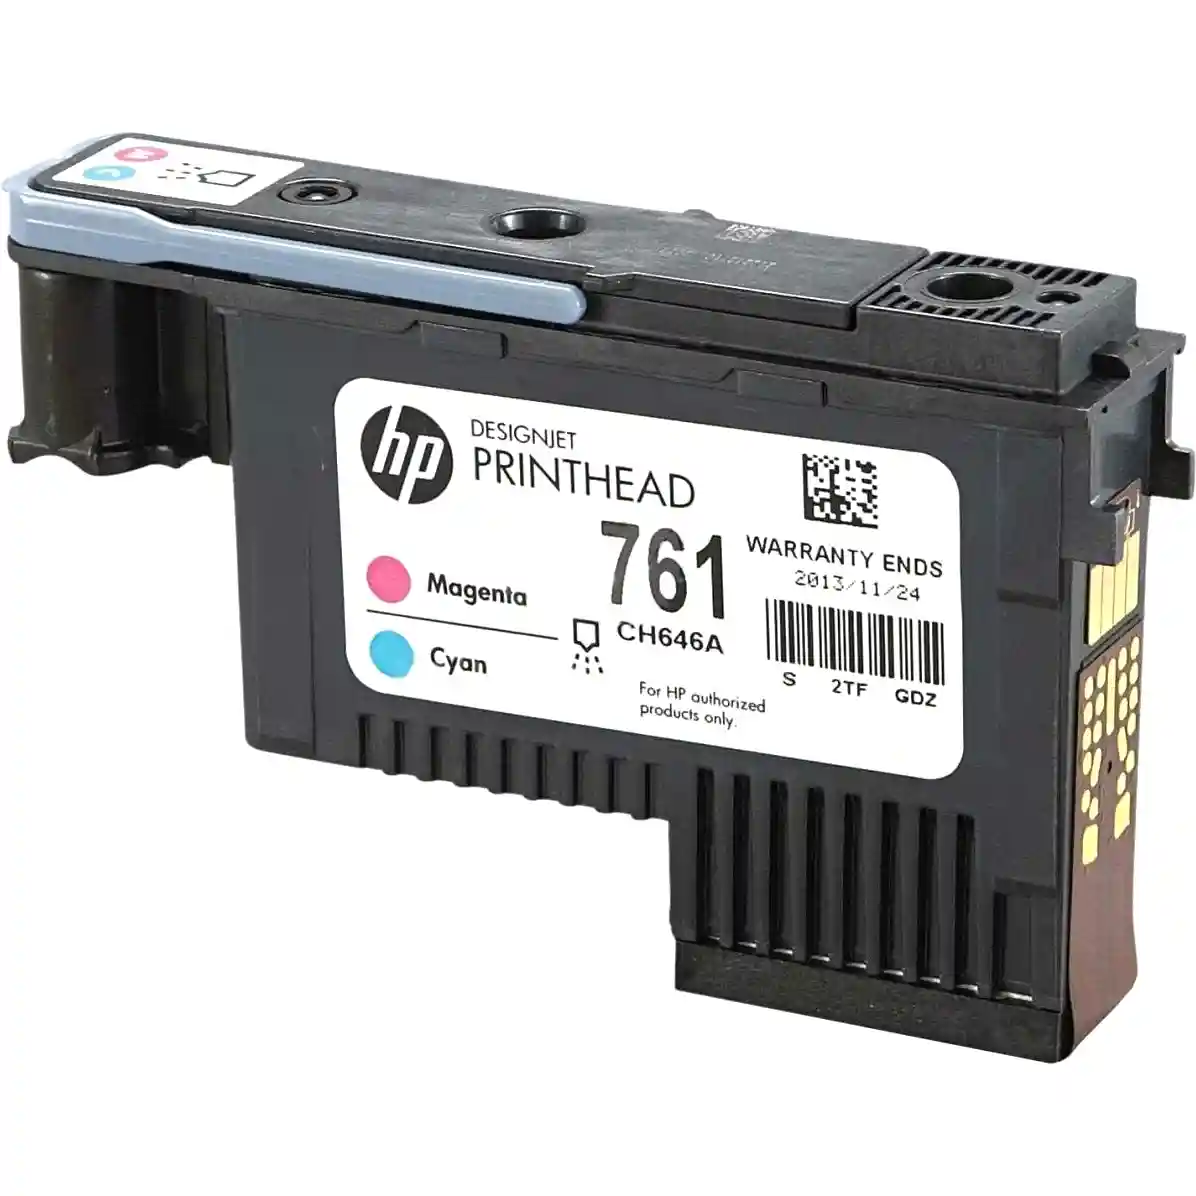 Печатающая головка HP 761 Magenta and Cyan (CH646A)